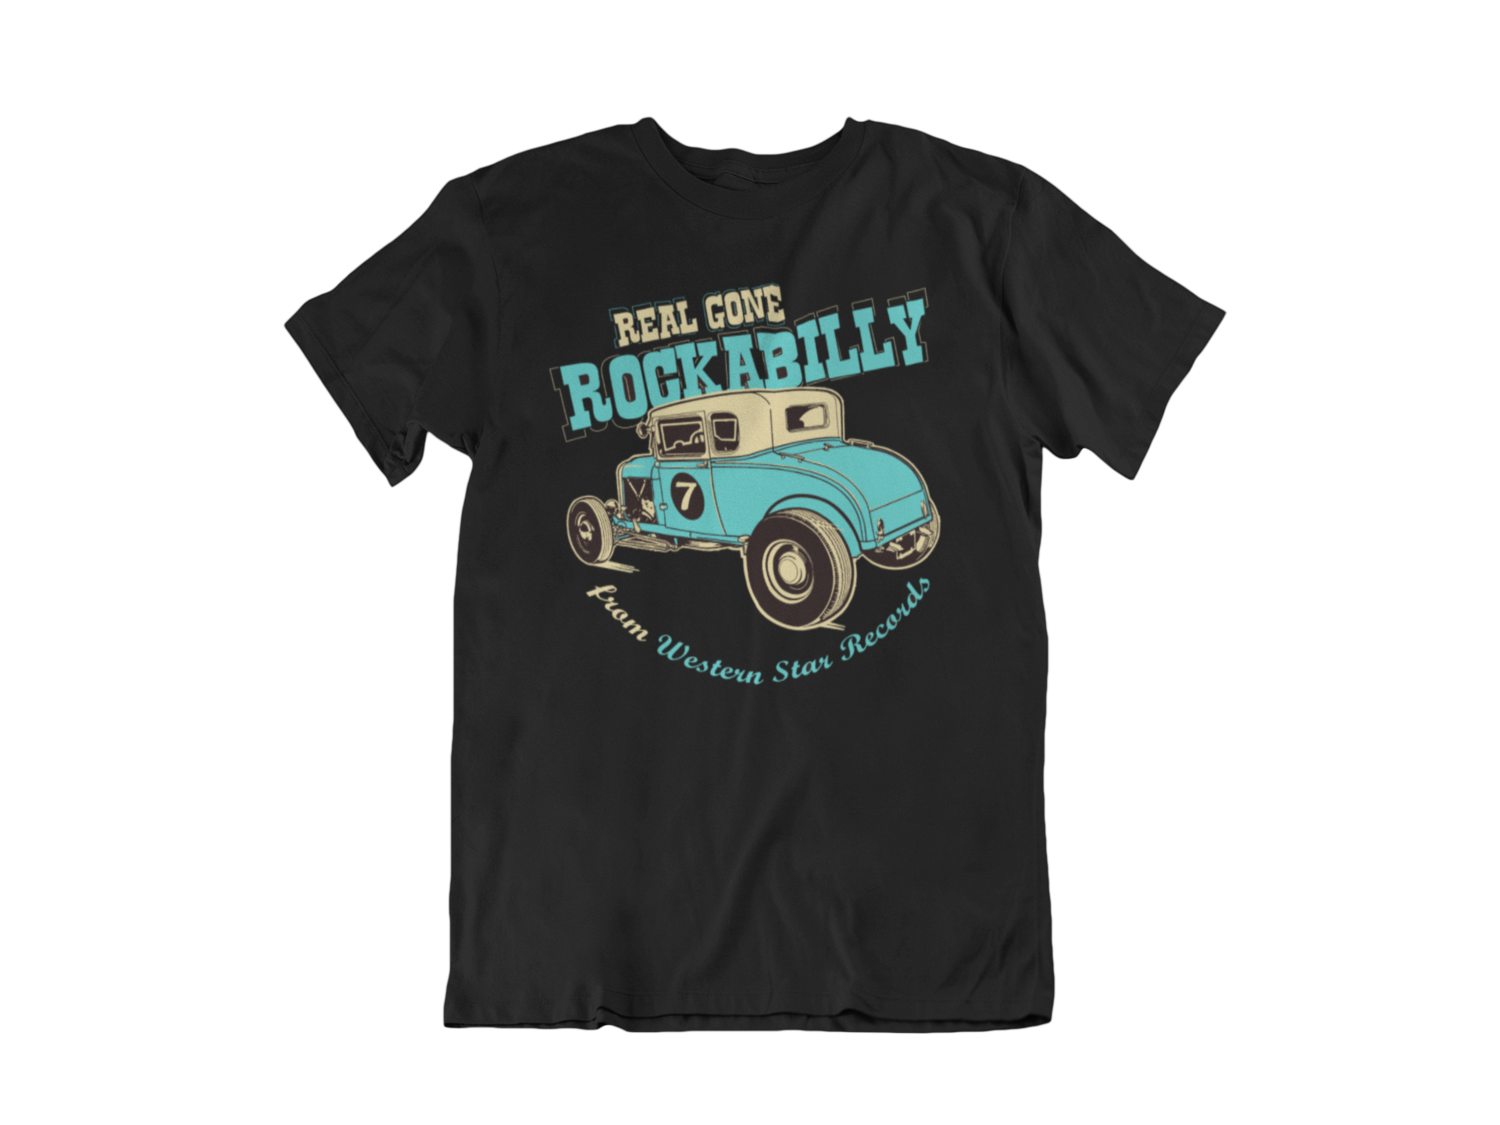 Real Gone Rockabilly by Western Star tshirt for MEN